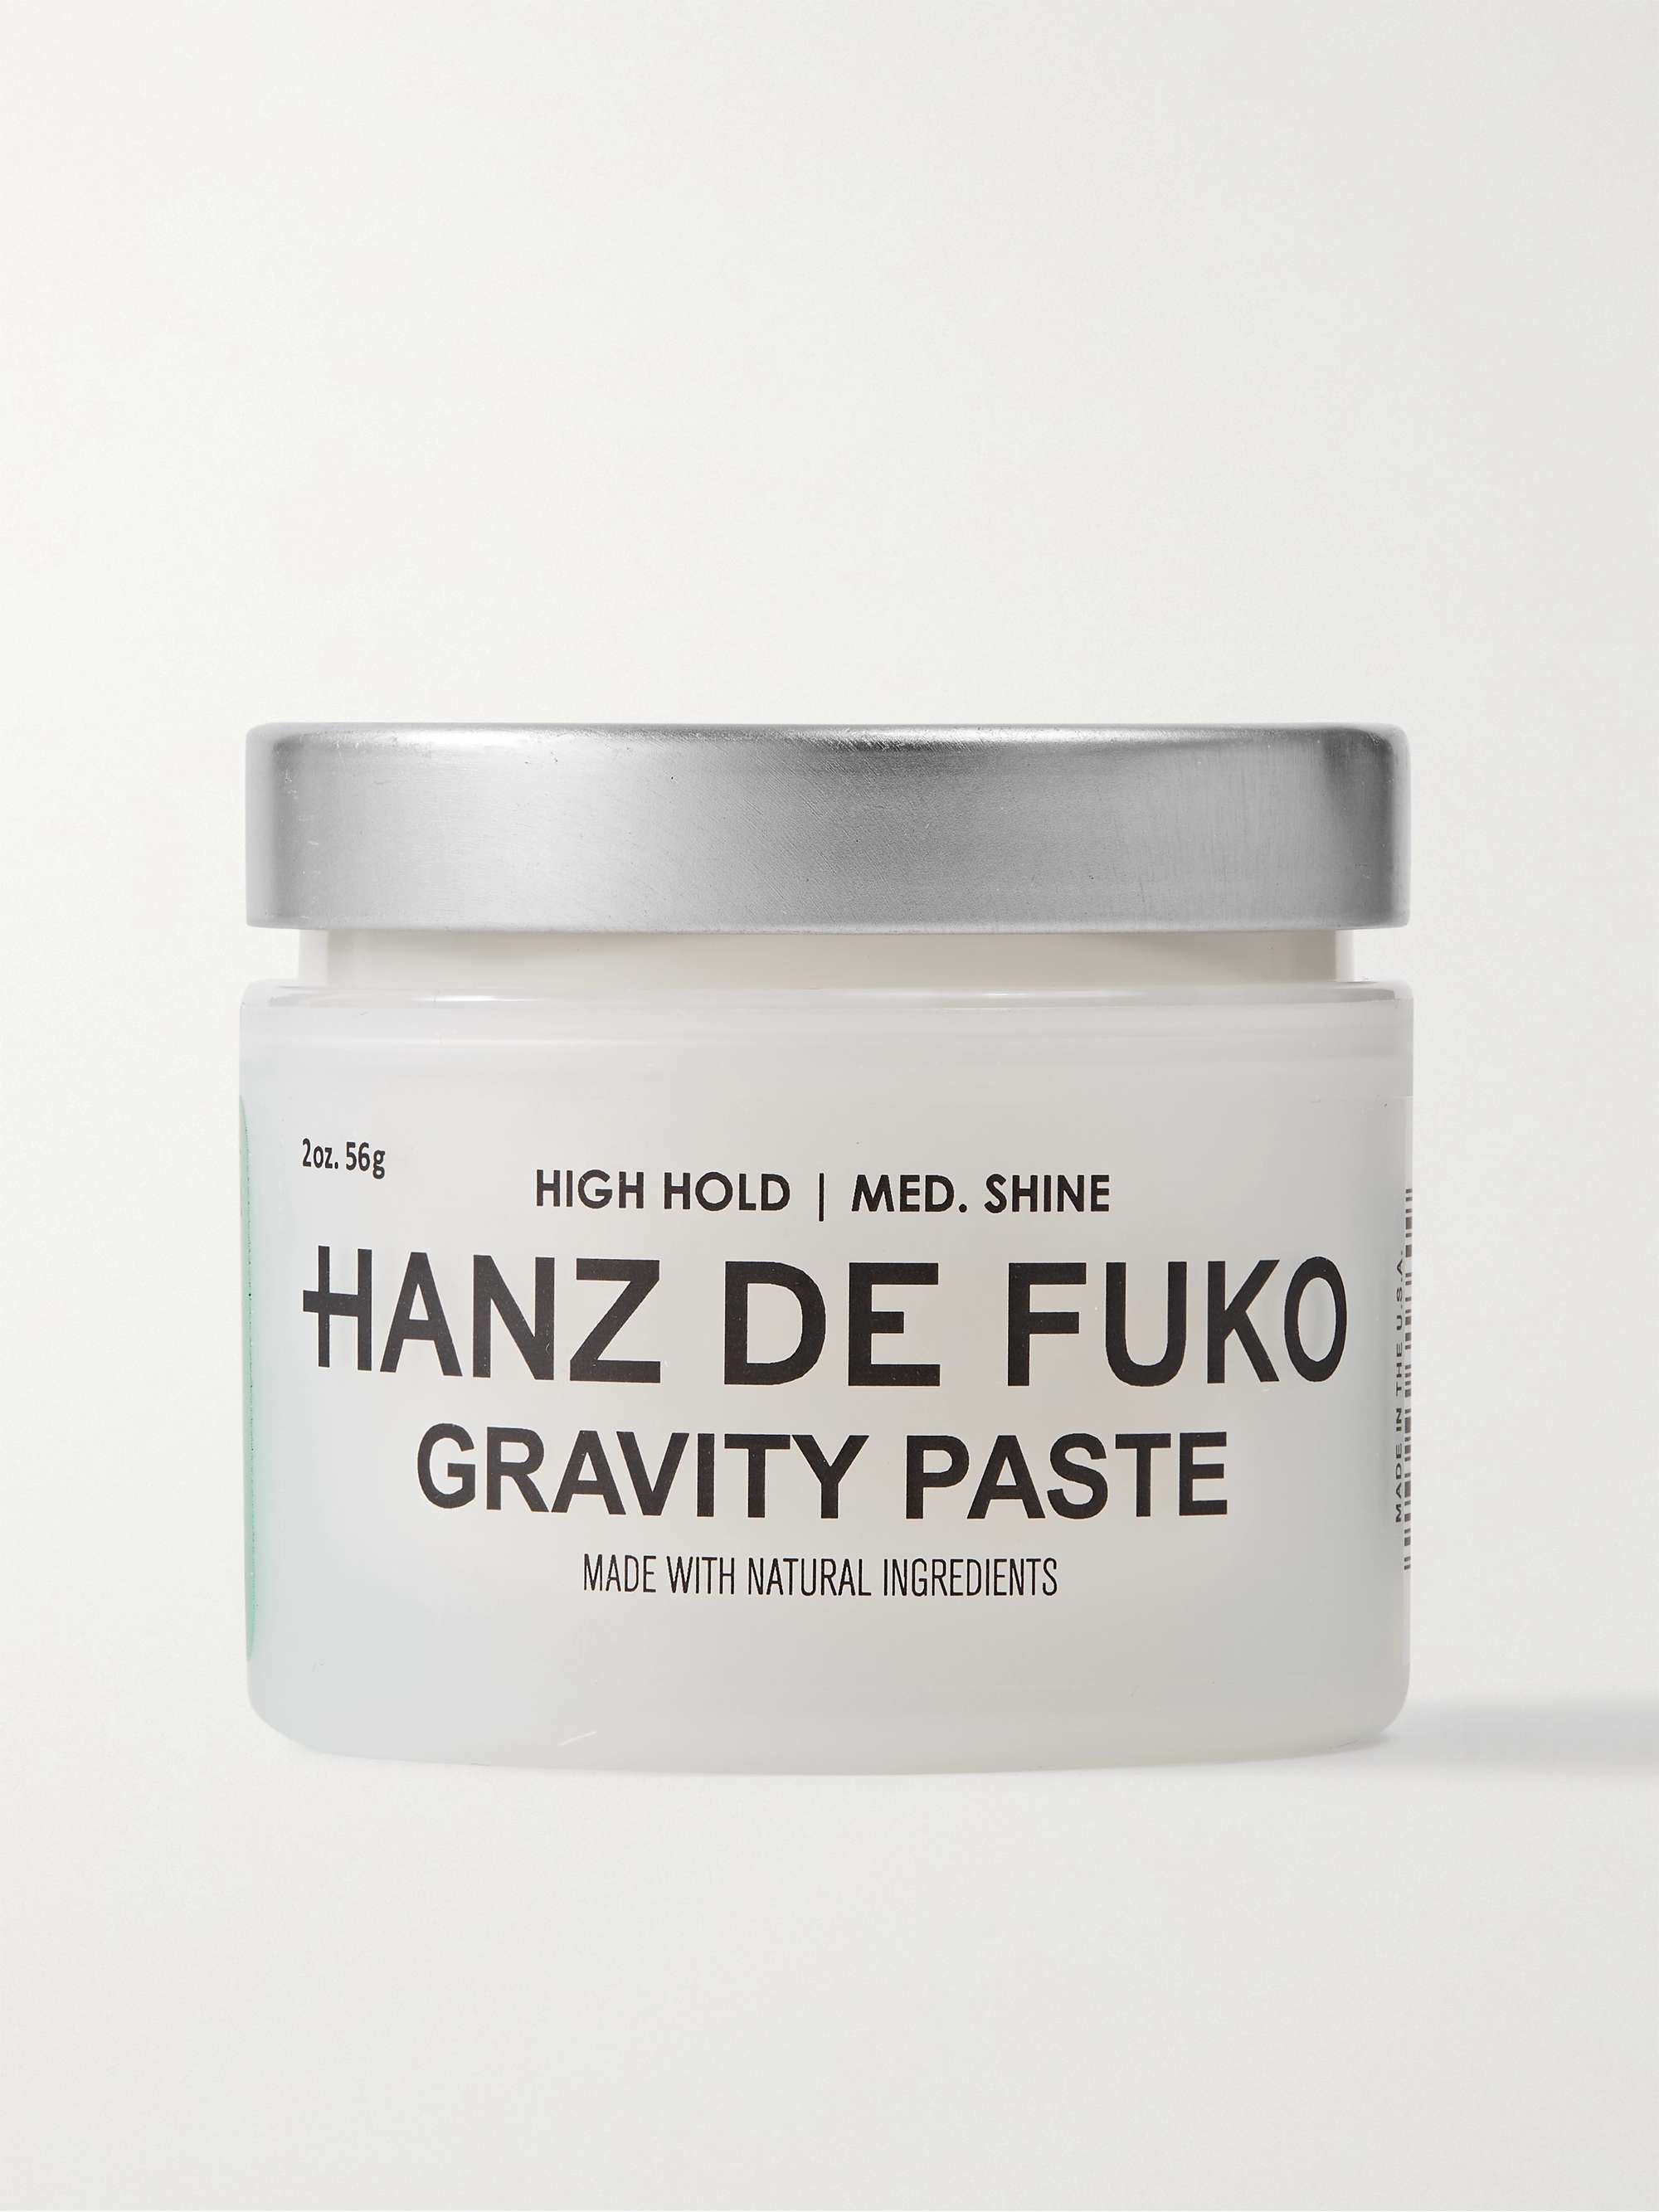 HANZ DE FUKO Gravity Paste, 56g